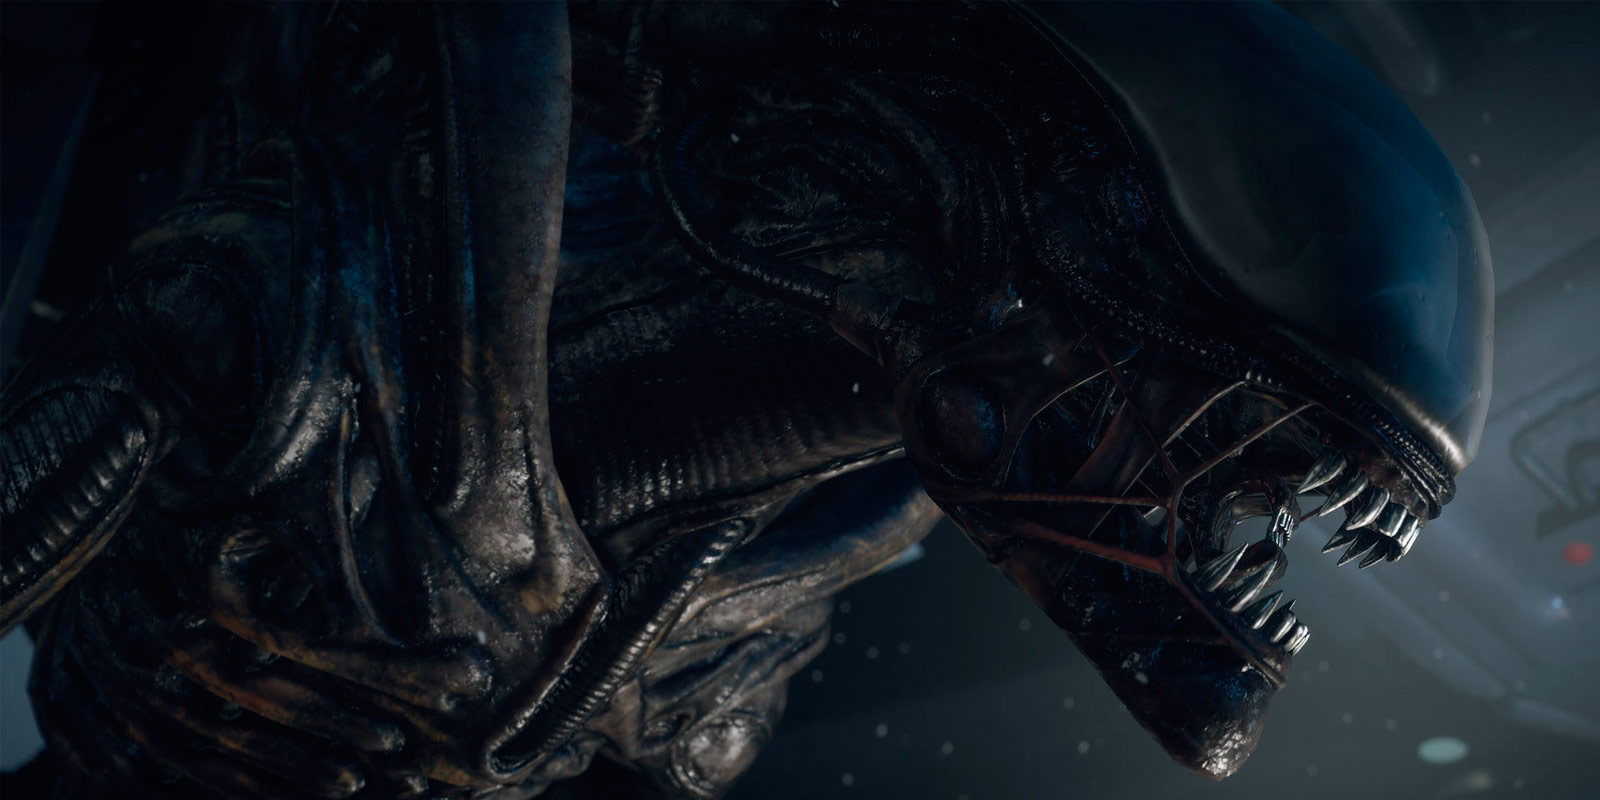 Desvelado el primer poster de 'Alien: Covenant'